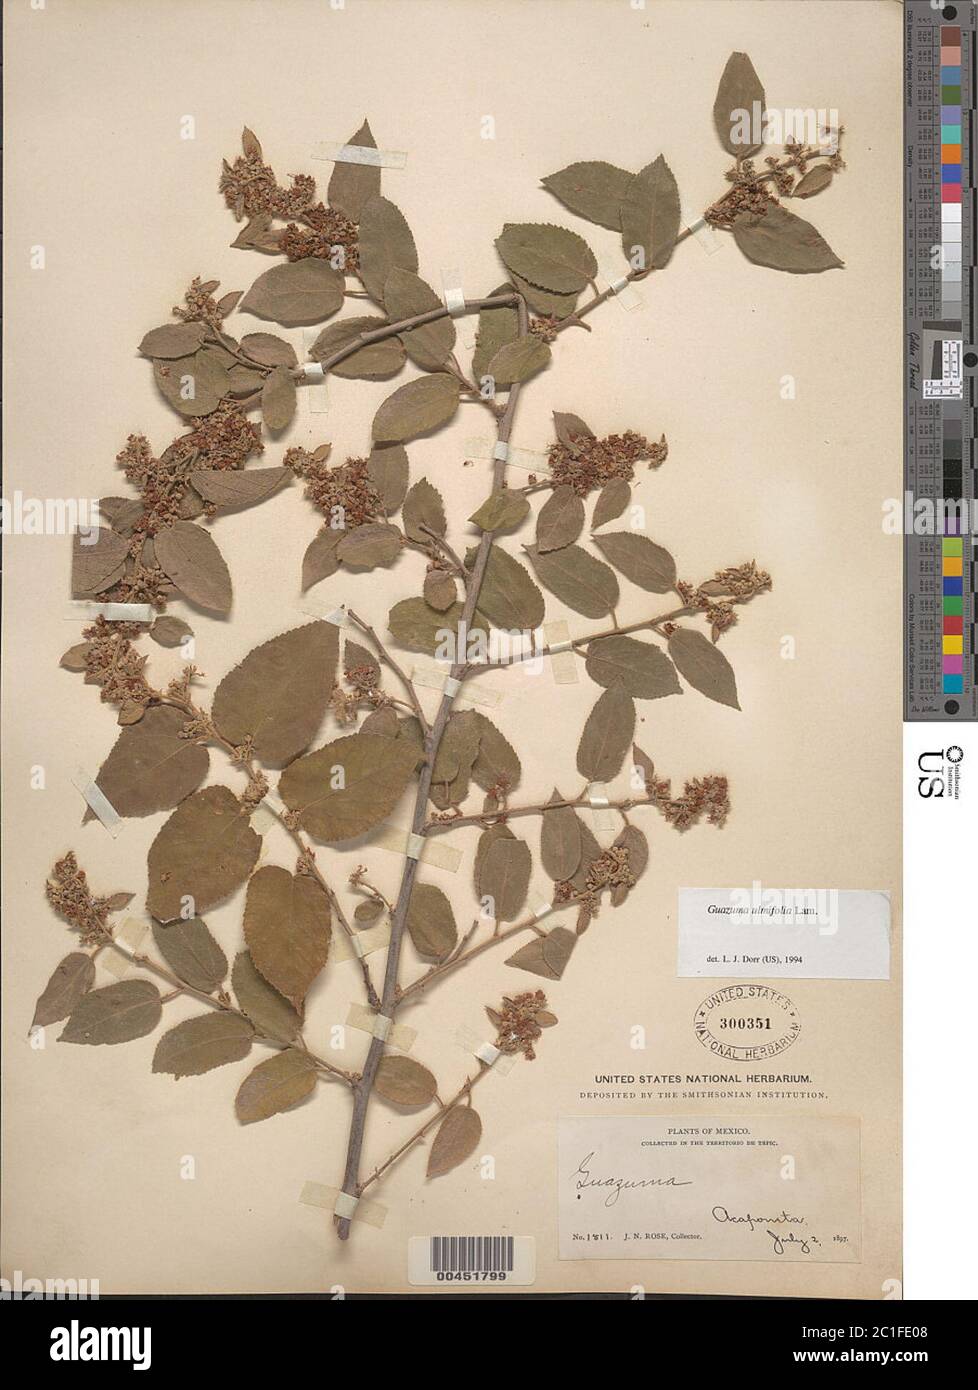 Guazuma ulmifolia Lam Guazuma ulmifolia Lam. Stock Photo